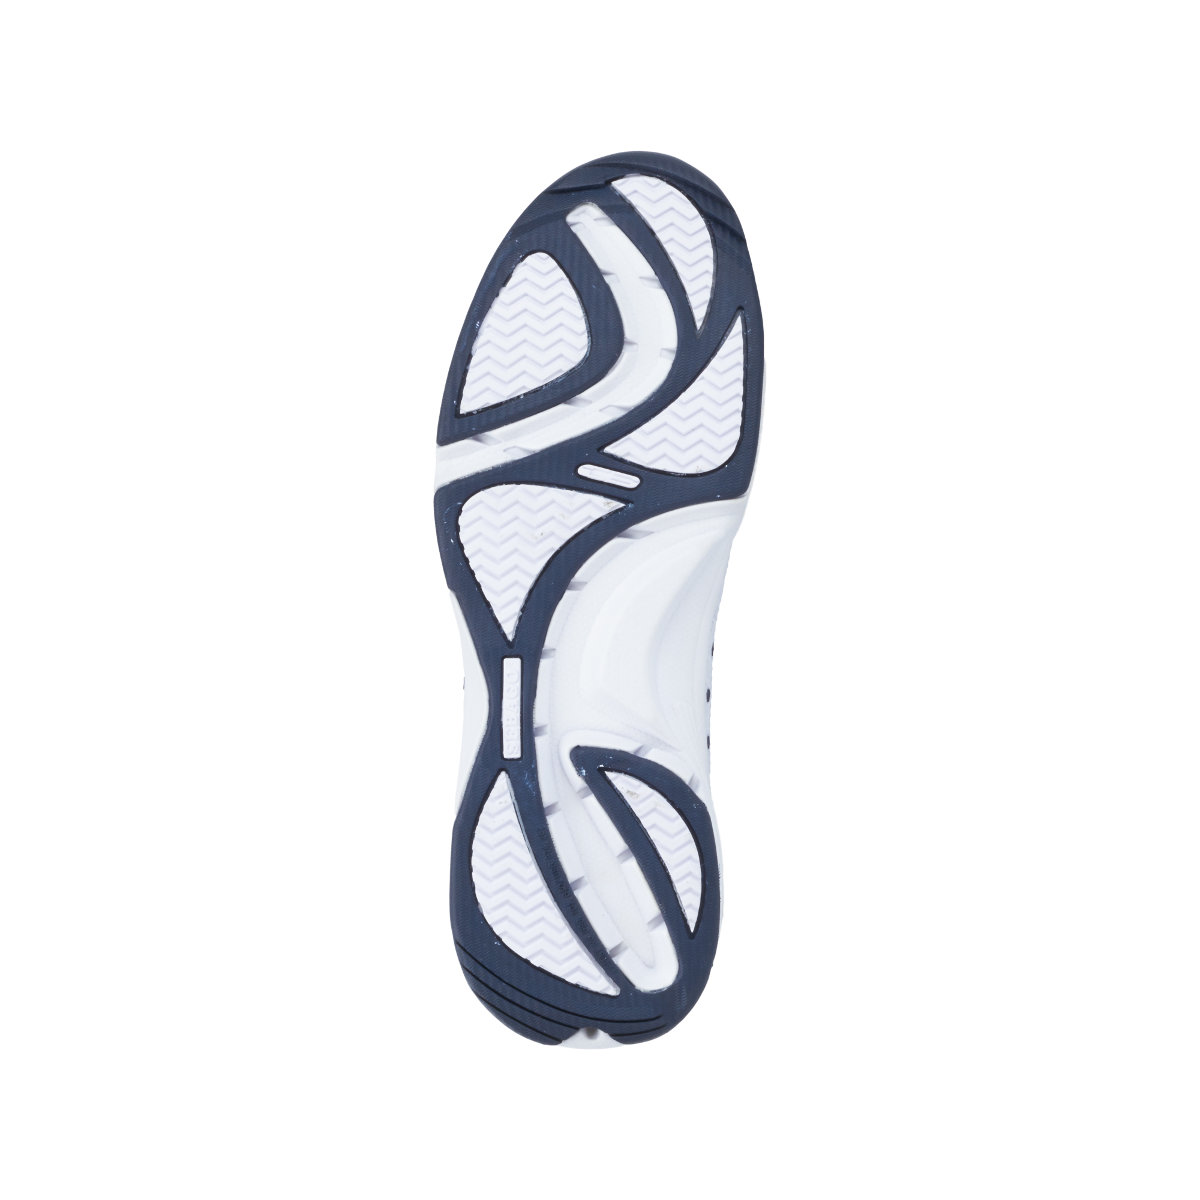 Sebago Cyphon Sea Sport chaussures à voile femme blanche, taille EU 41 (US 10)